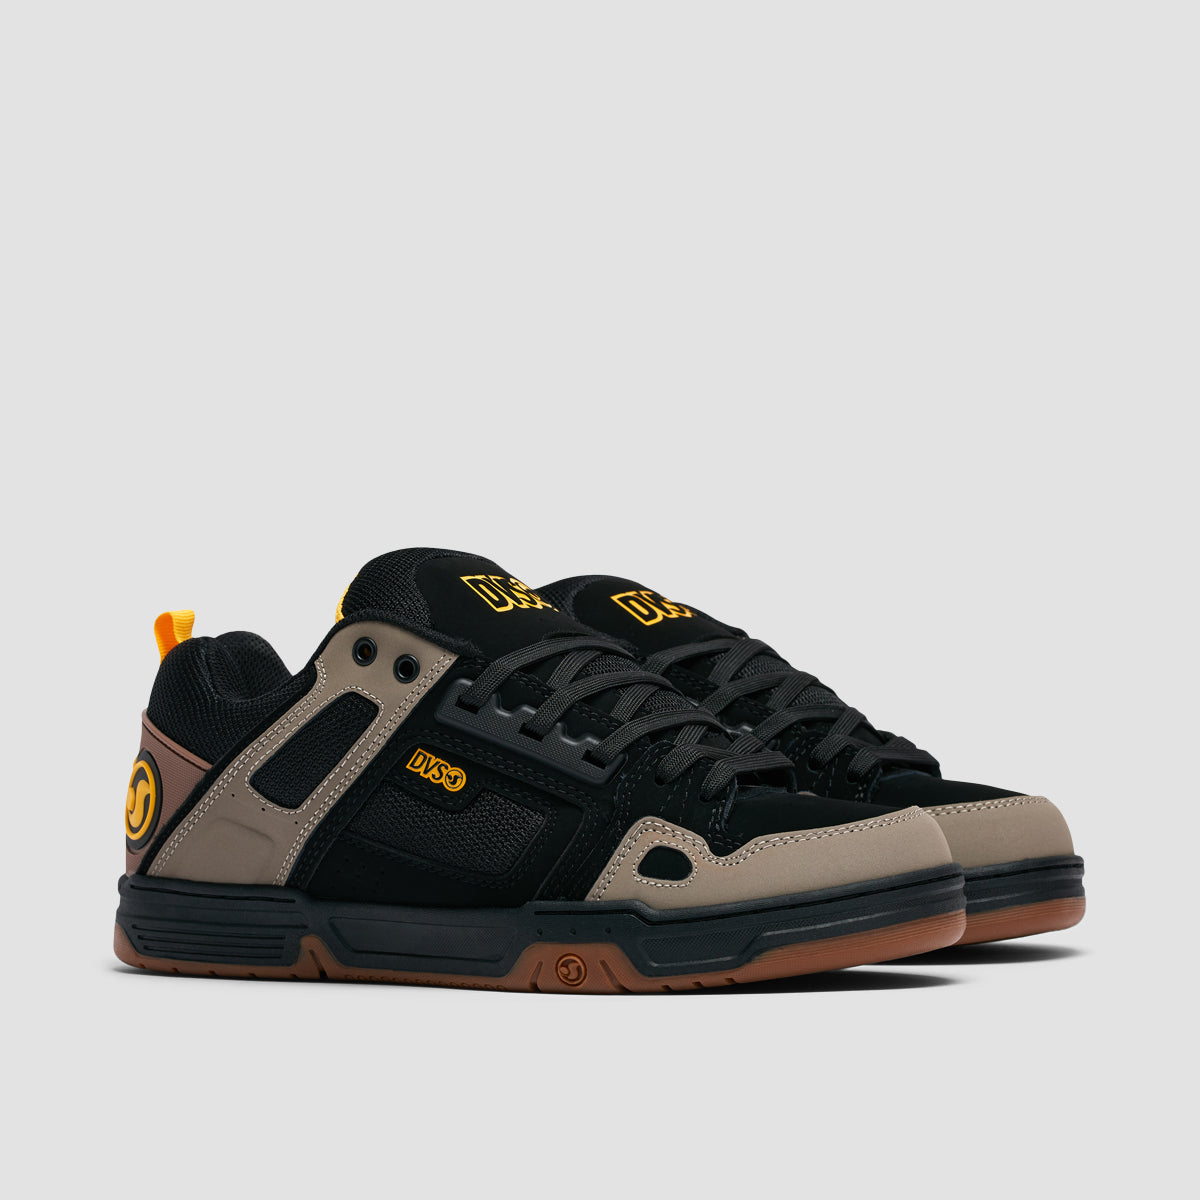 DVS Comanche Shoes - Brindle/Black/Yellow Nubuck